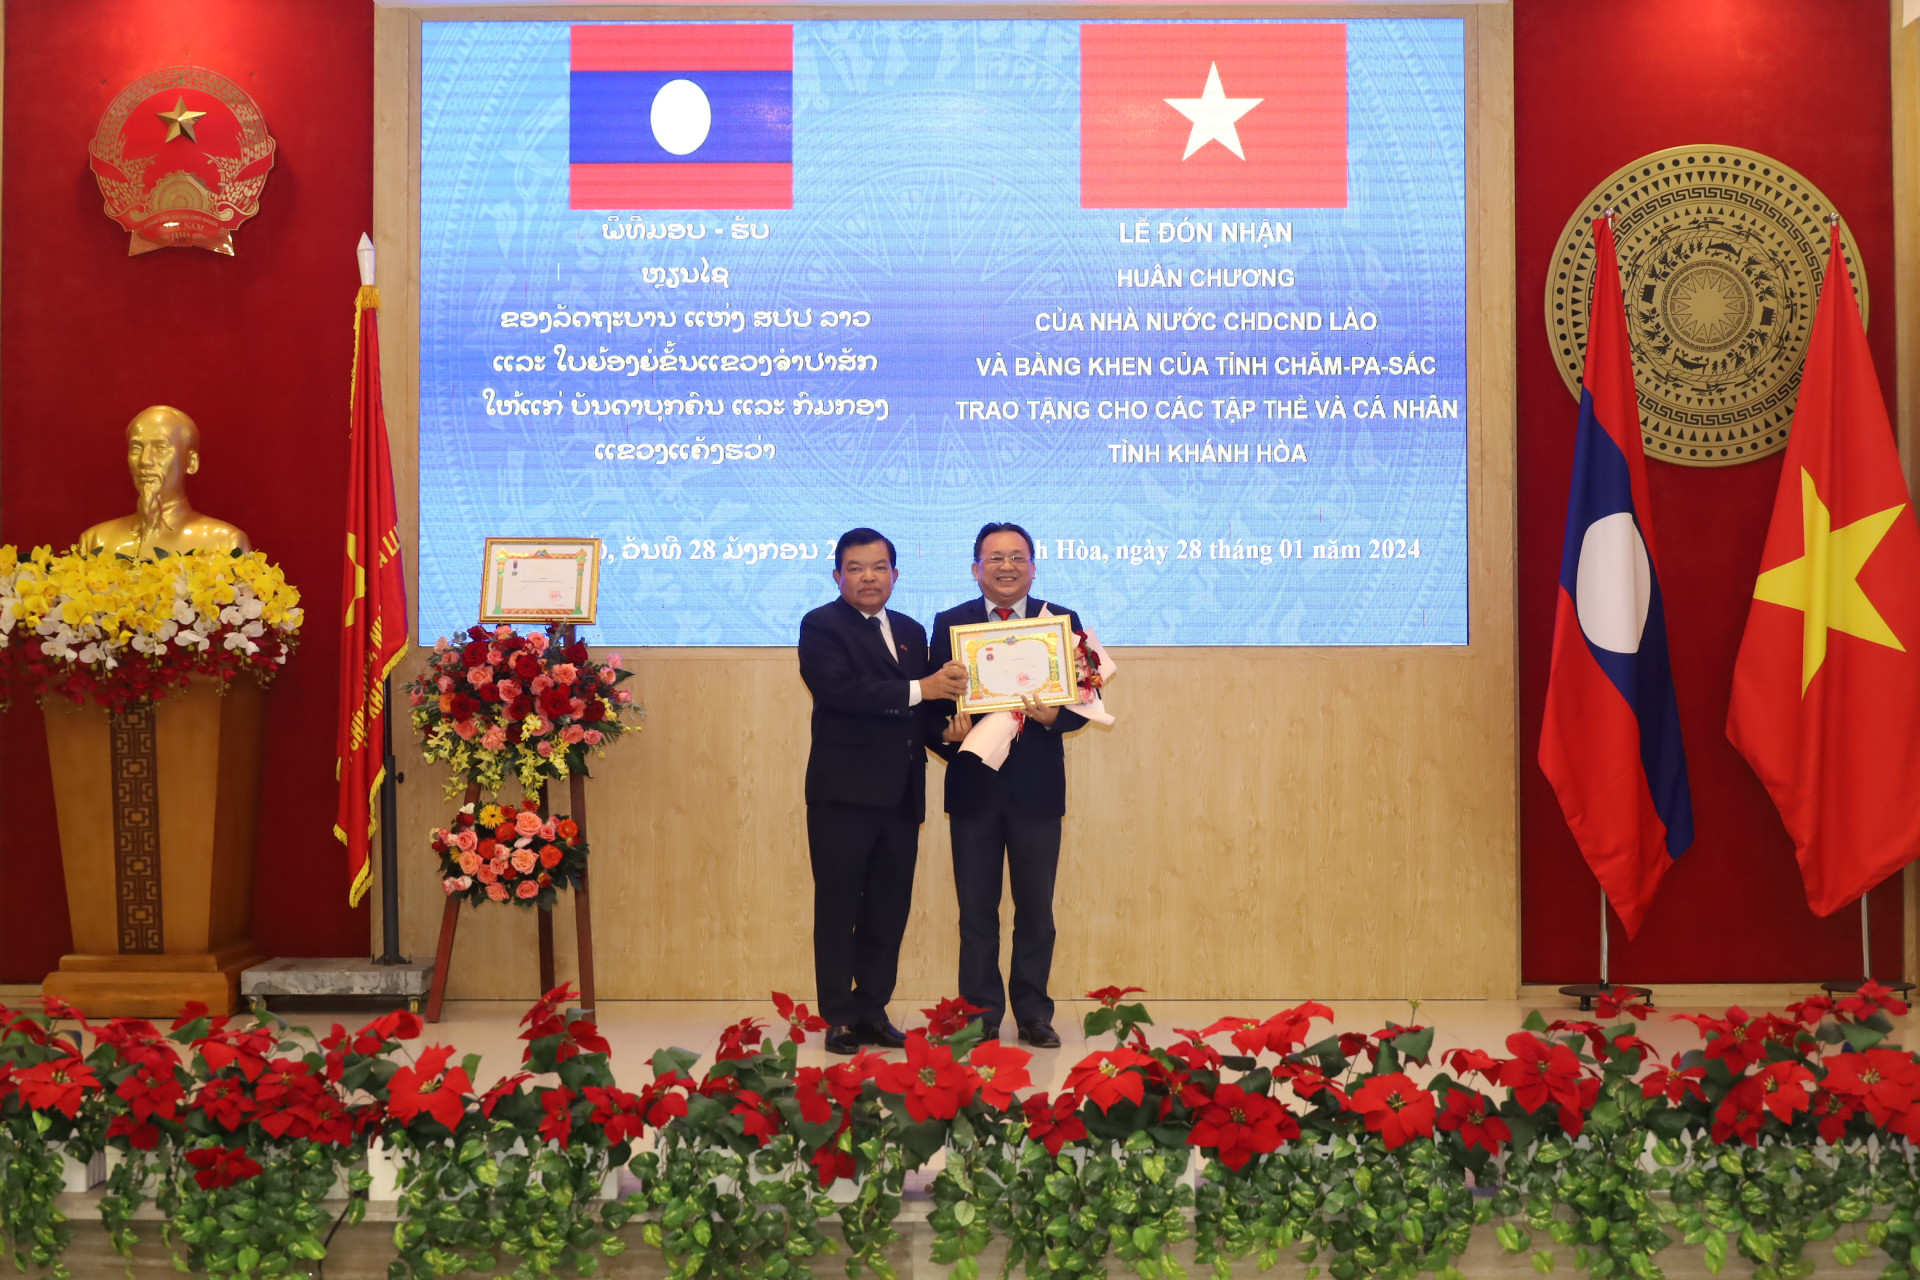 Đồng chí Lê Hữu Hoàng đón nhận Huân chương Hữu nghị do Chủ tịch nước CHDCND Lào tặng.